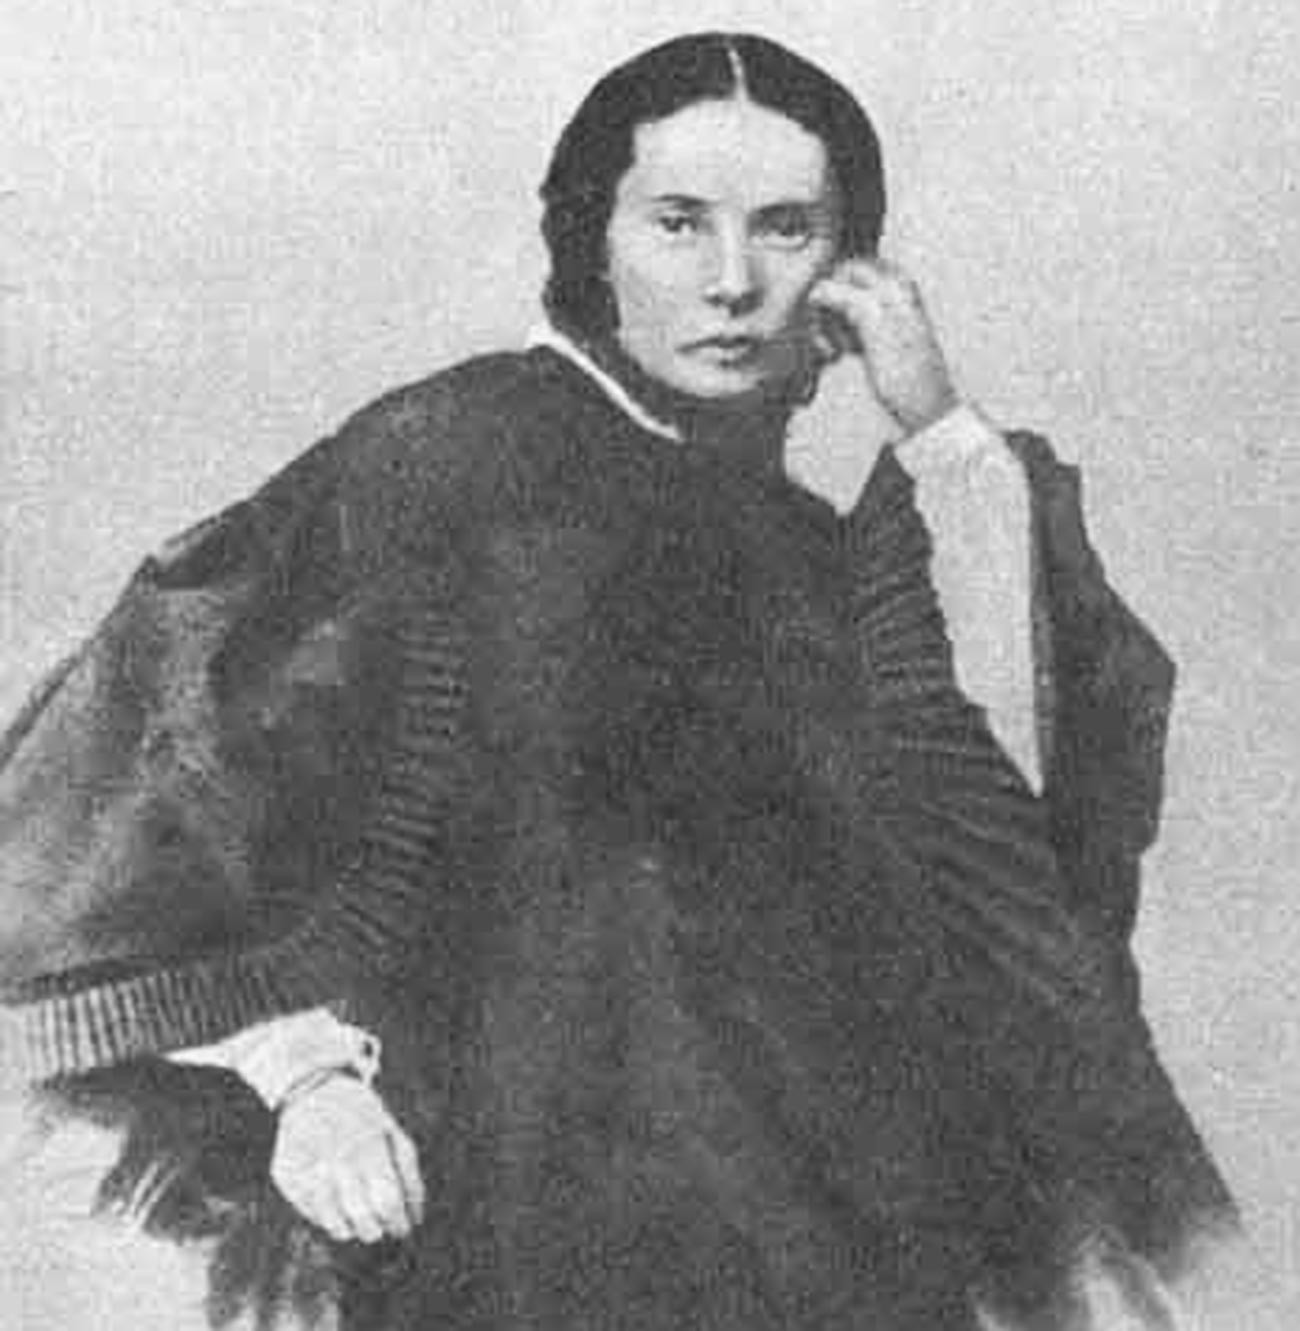 Марија Дмитријевна Достојевска, девојачко Констант, а по првом мужу Исајева (1824-1864) је 1857. постала прва жена Достојевског.